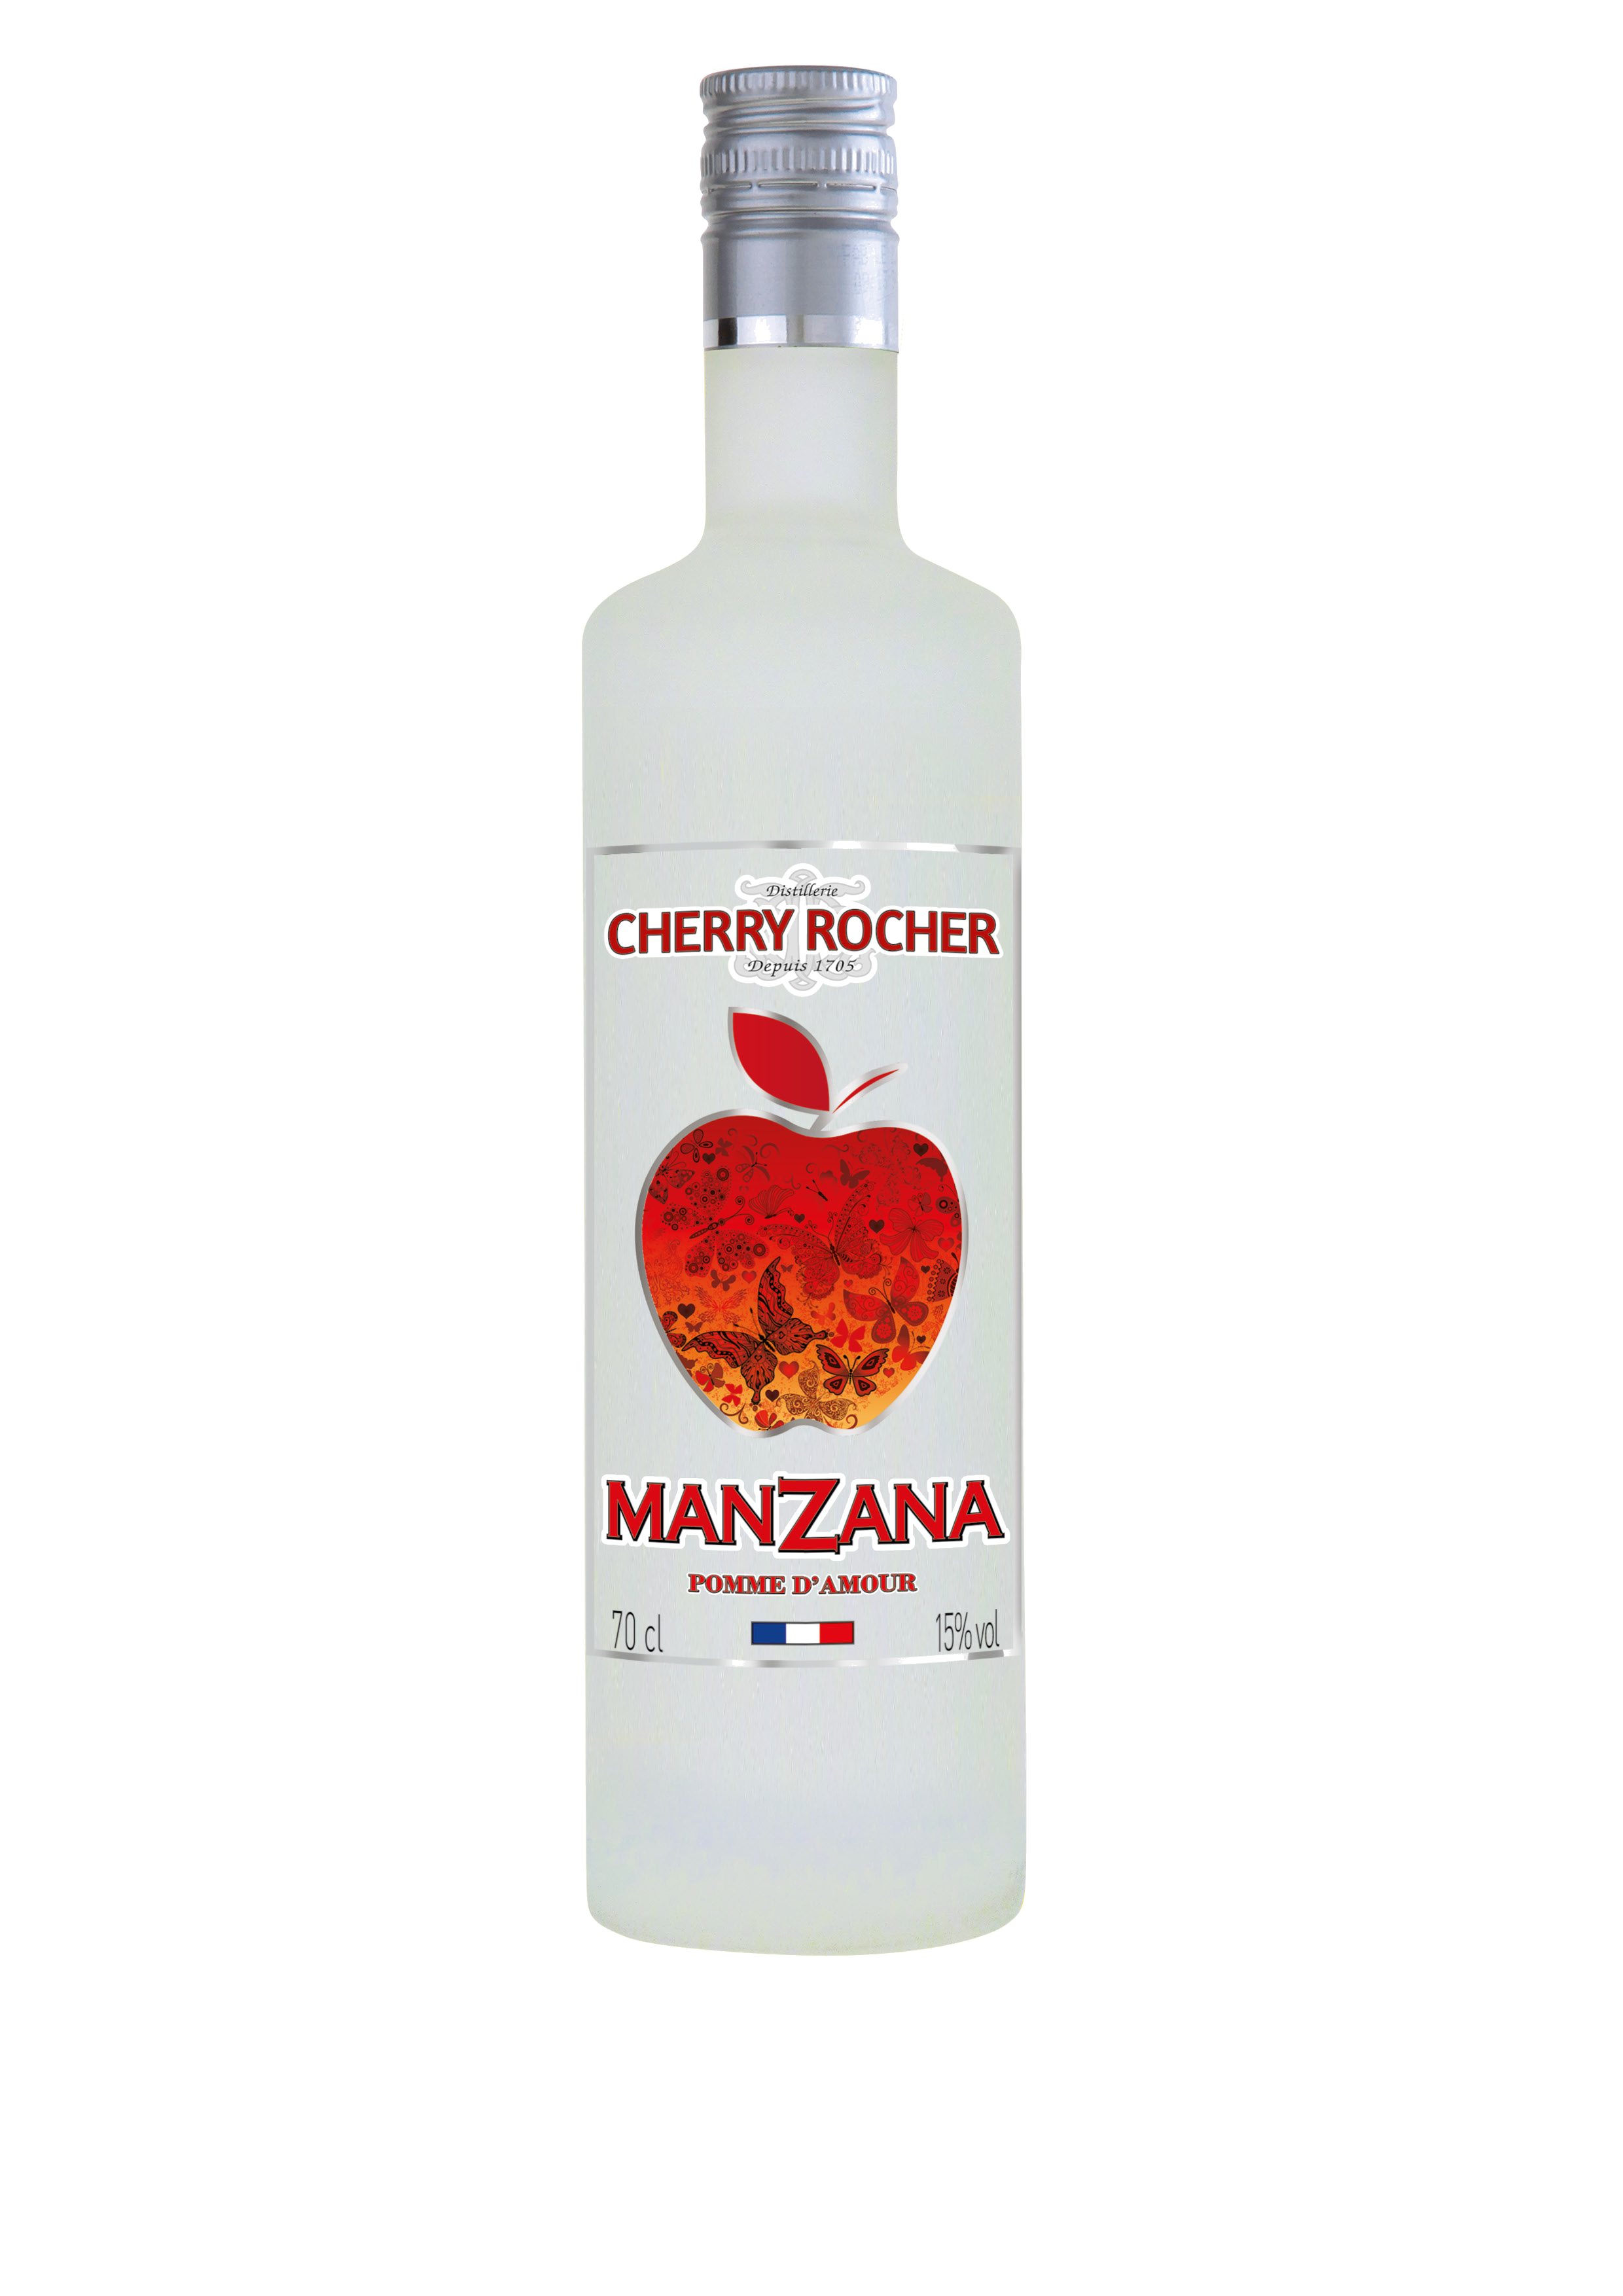 Manzana pomme d'amour - Modern liqueurs - Cherry-rocher